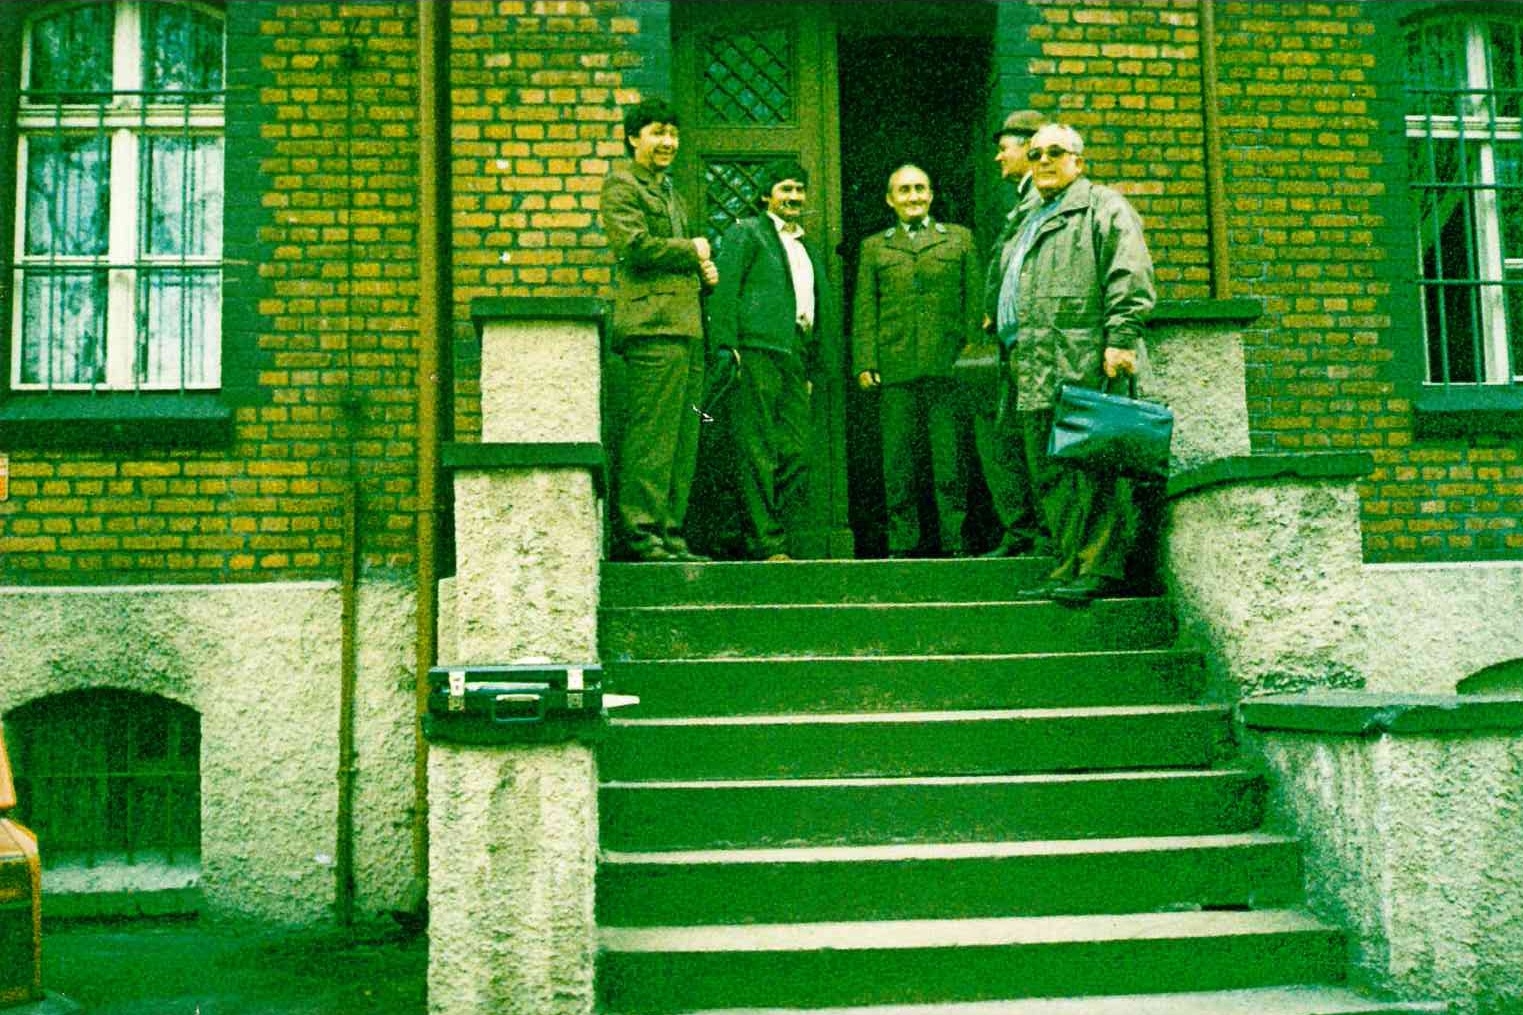 Zaczynając od lewej: Jerzy Giezek (były Leśniczy L - ctwa Osiecznica), Kazimierz Erhardt (Leśniczy L - ctwa Parowa), Jan Józefczyk (były Nadleśniczy), Tadeusz Szponar (były Leśniczy L - ctwa Lisek), Józef Czerniak - 1992 r. Udostępnił K. Erhardt.